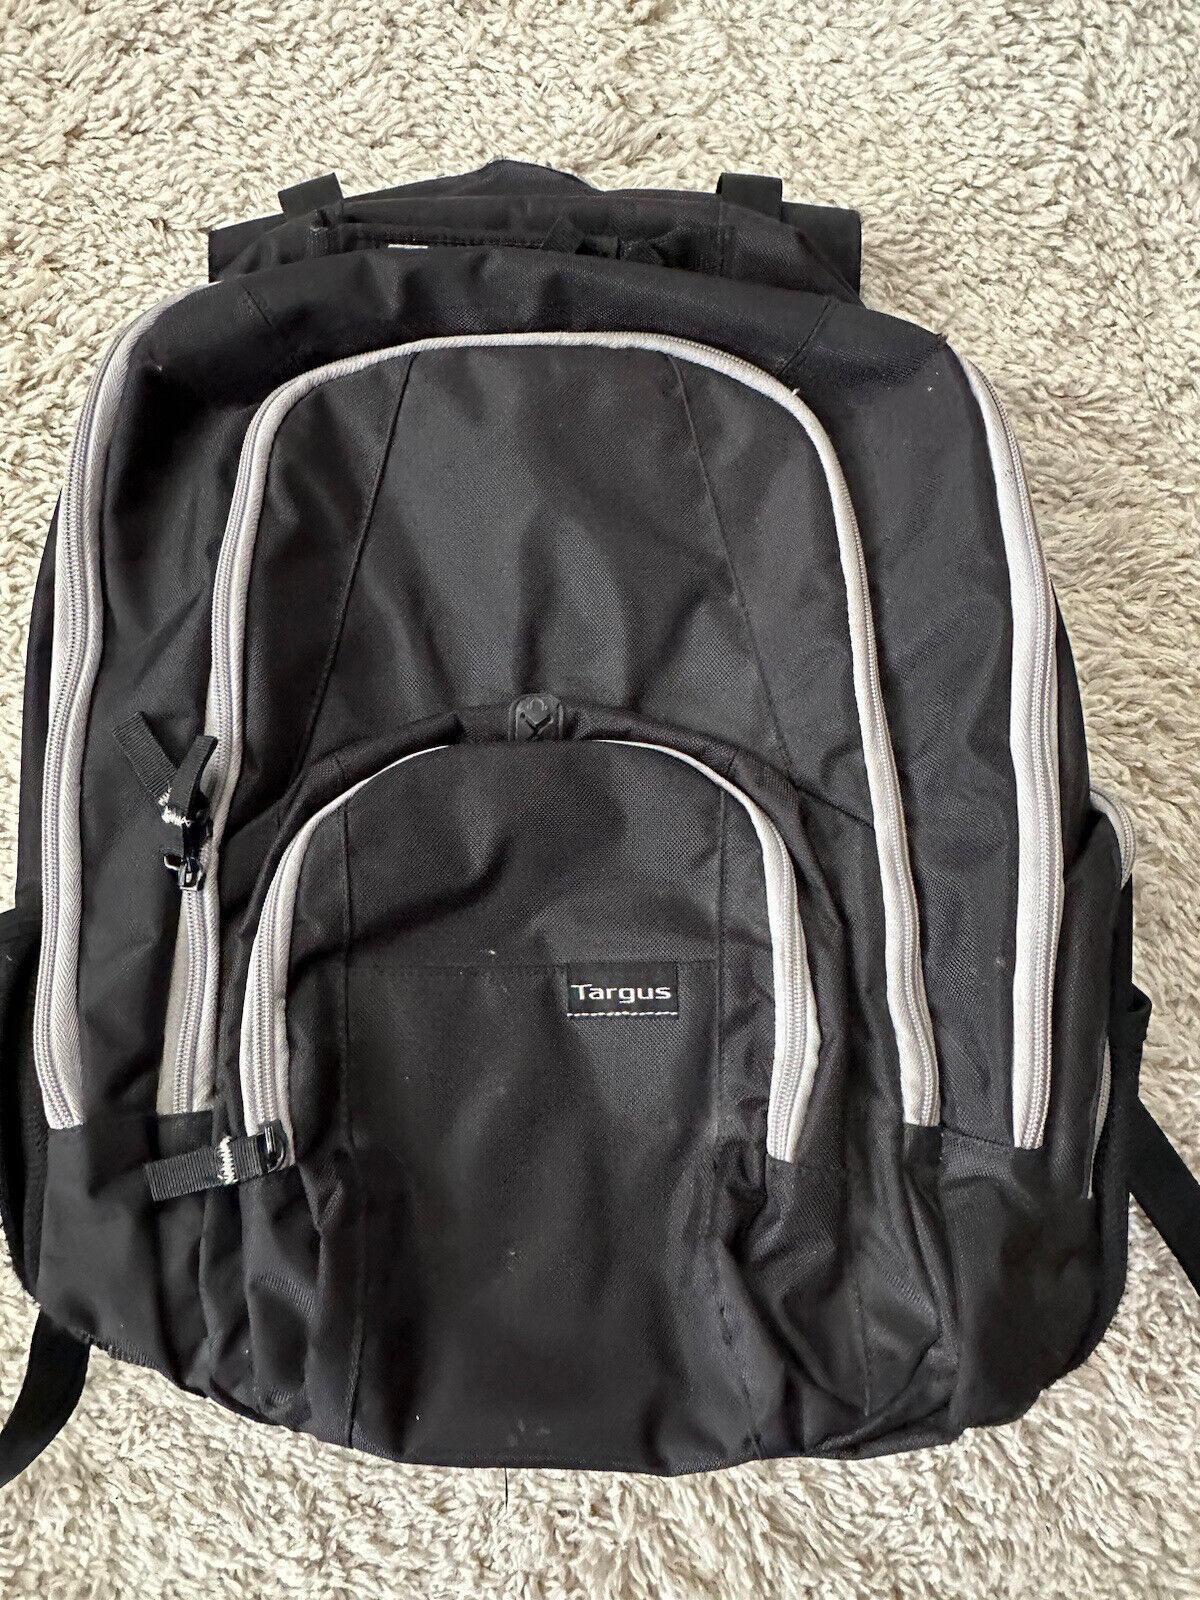 TARGUS Backpack Sport Standard Laptop Tablet Computer Travel Bag ~ Black AC0069